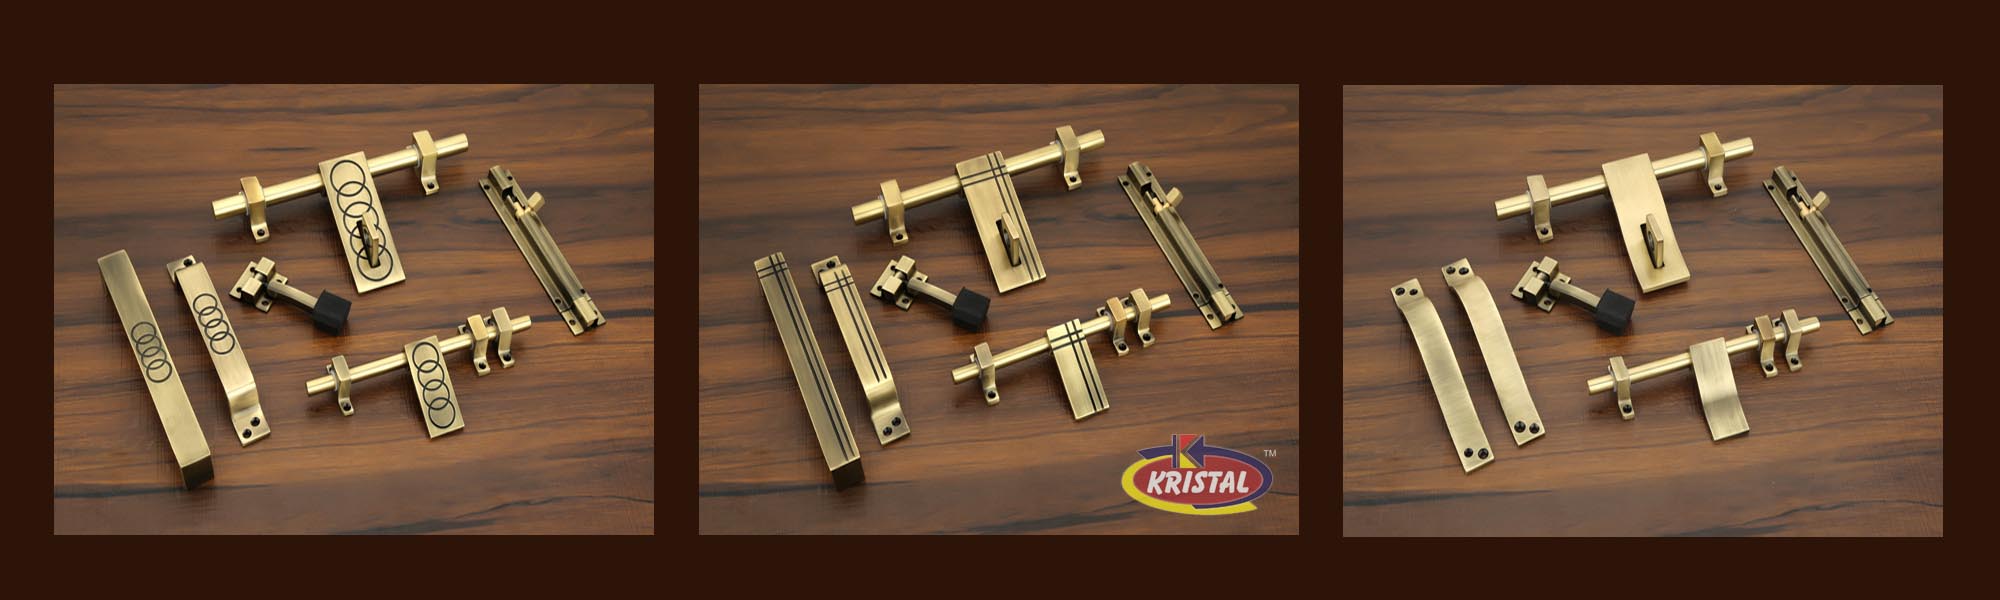 Kristal Industries Hardware Antique Design Door Aldrop Handle Kit Manufacturers Exporters Rajkot